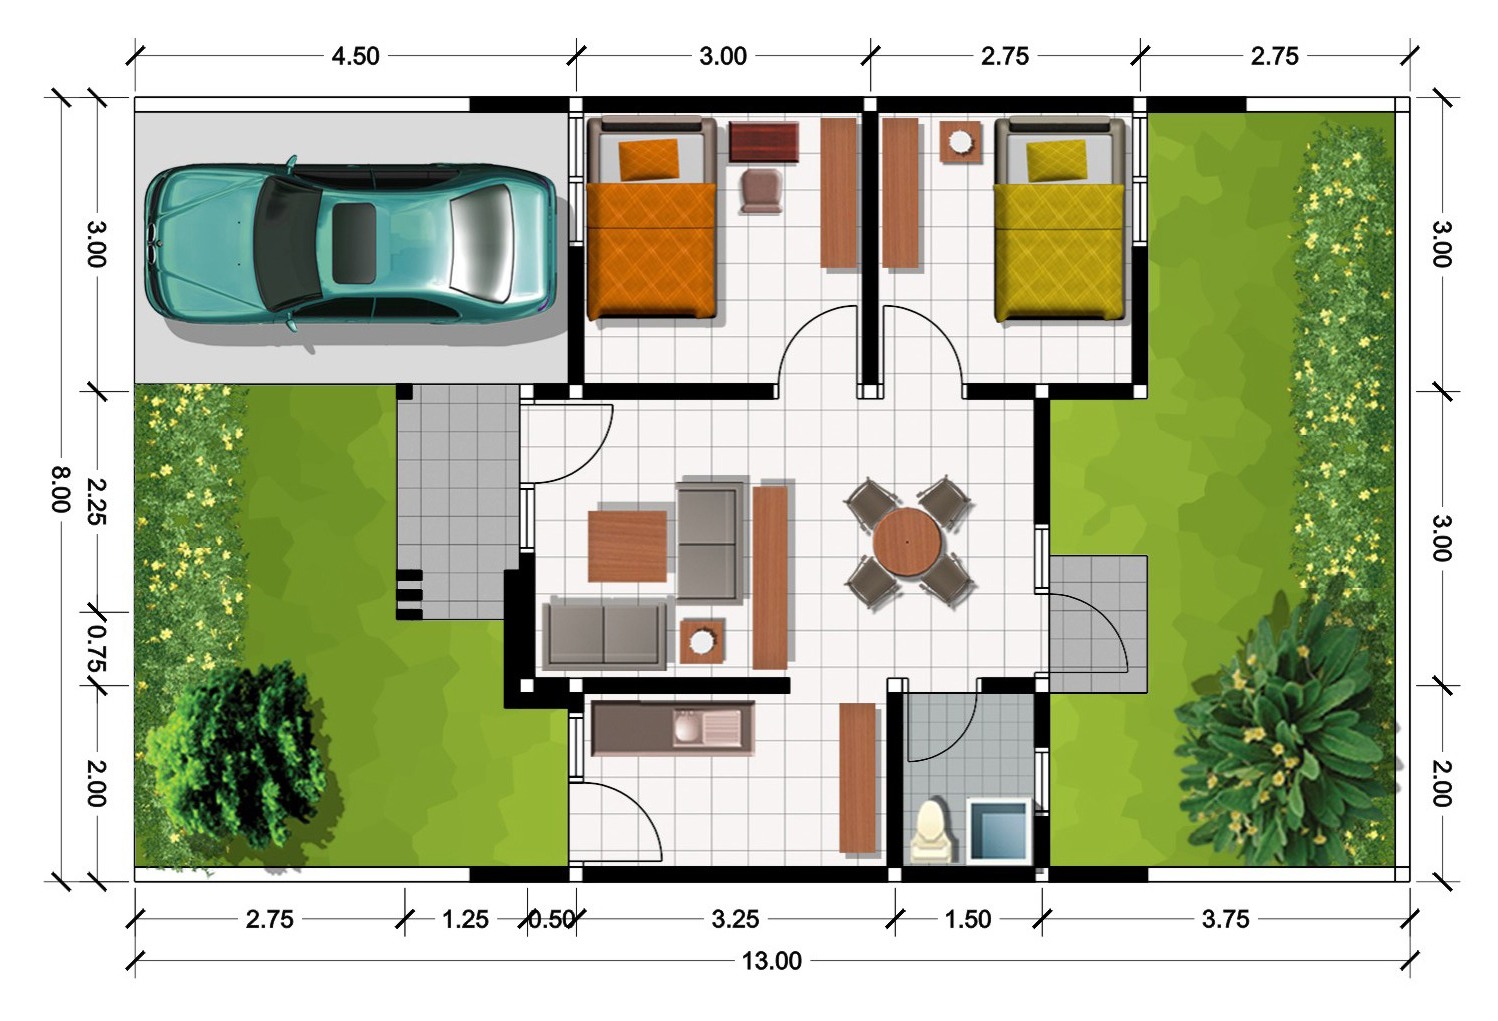 10 Desain Denah Rumah Idaman | Sun-ebank.com